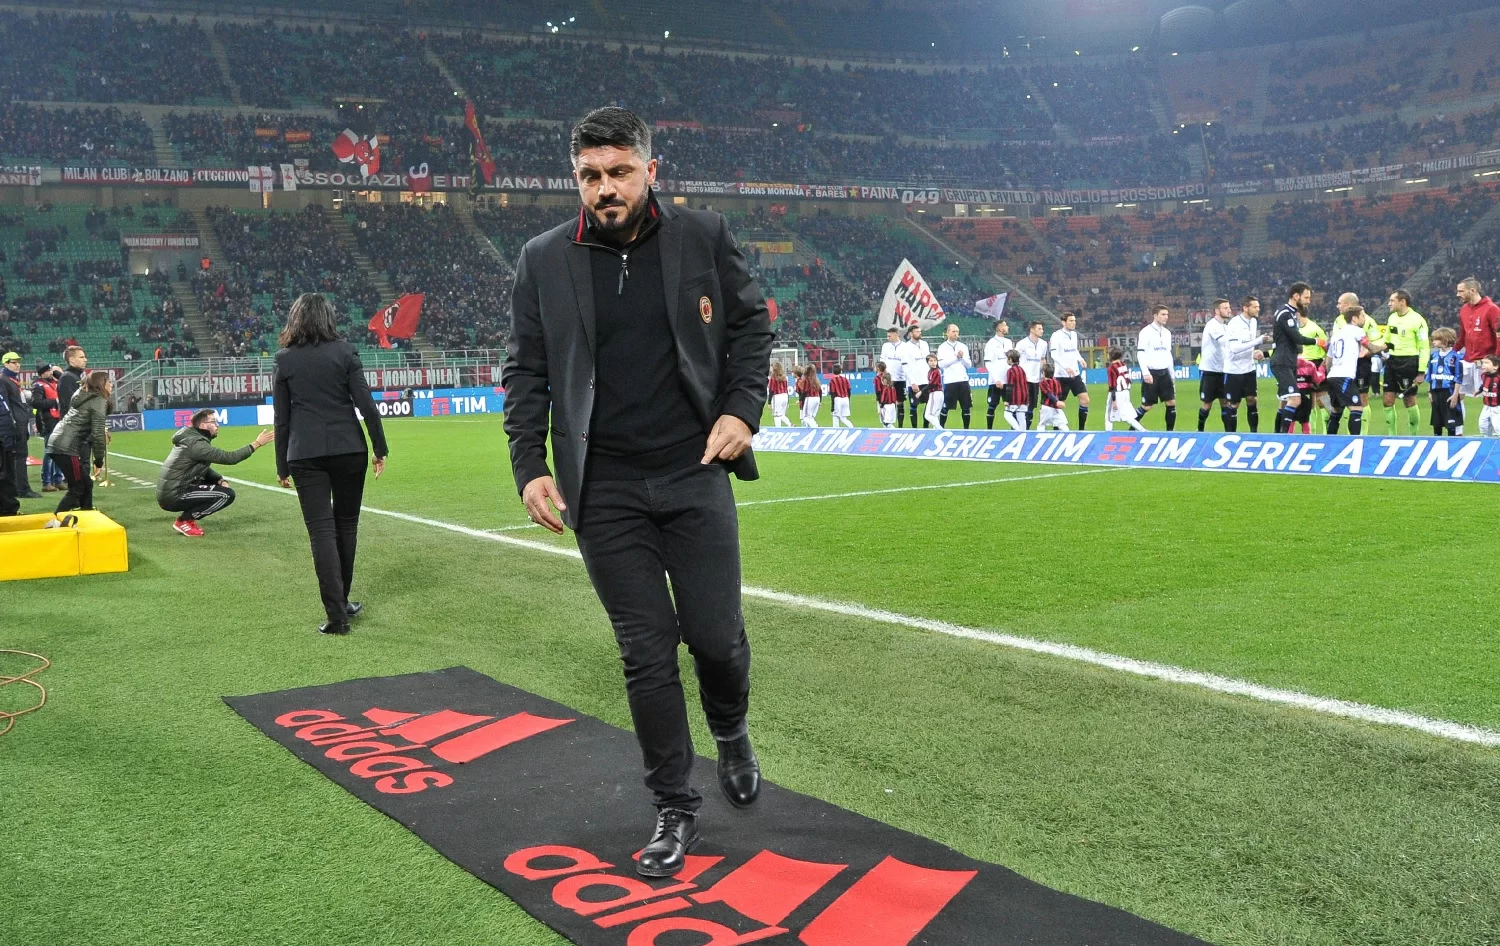 Il commento del Milan alle parole di Gattuso: “Impossibile fraintenderle”